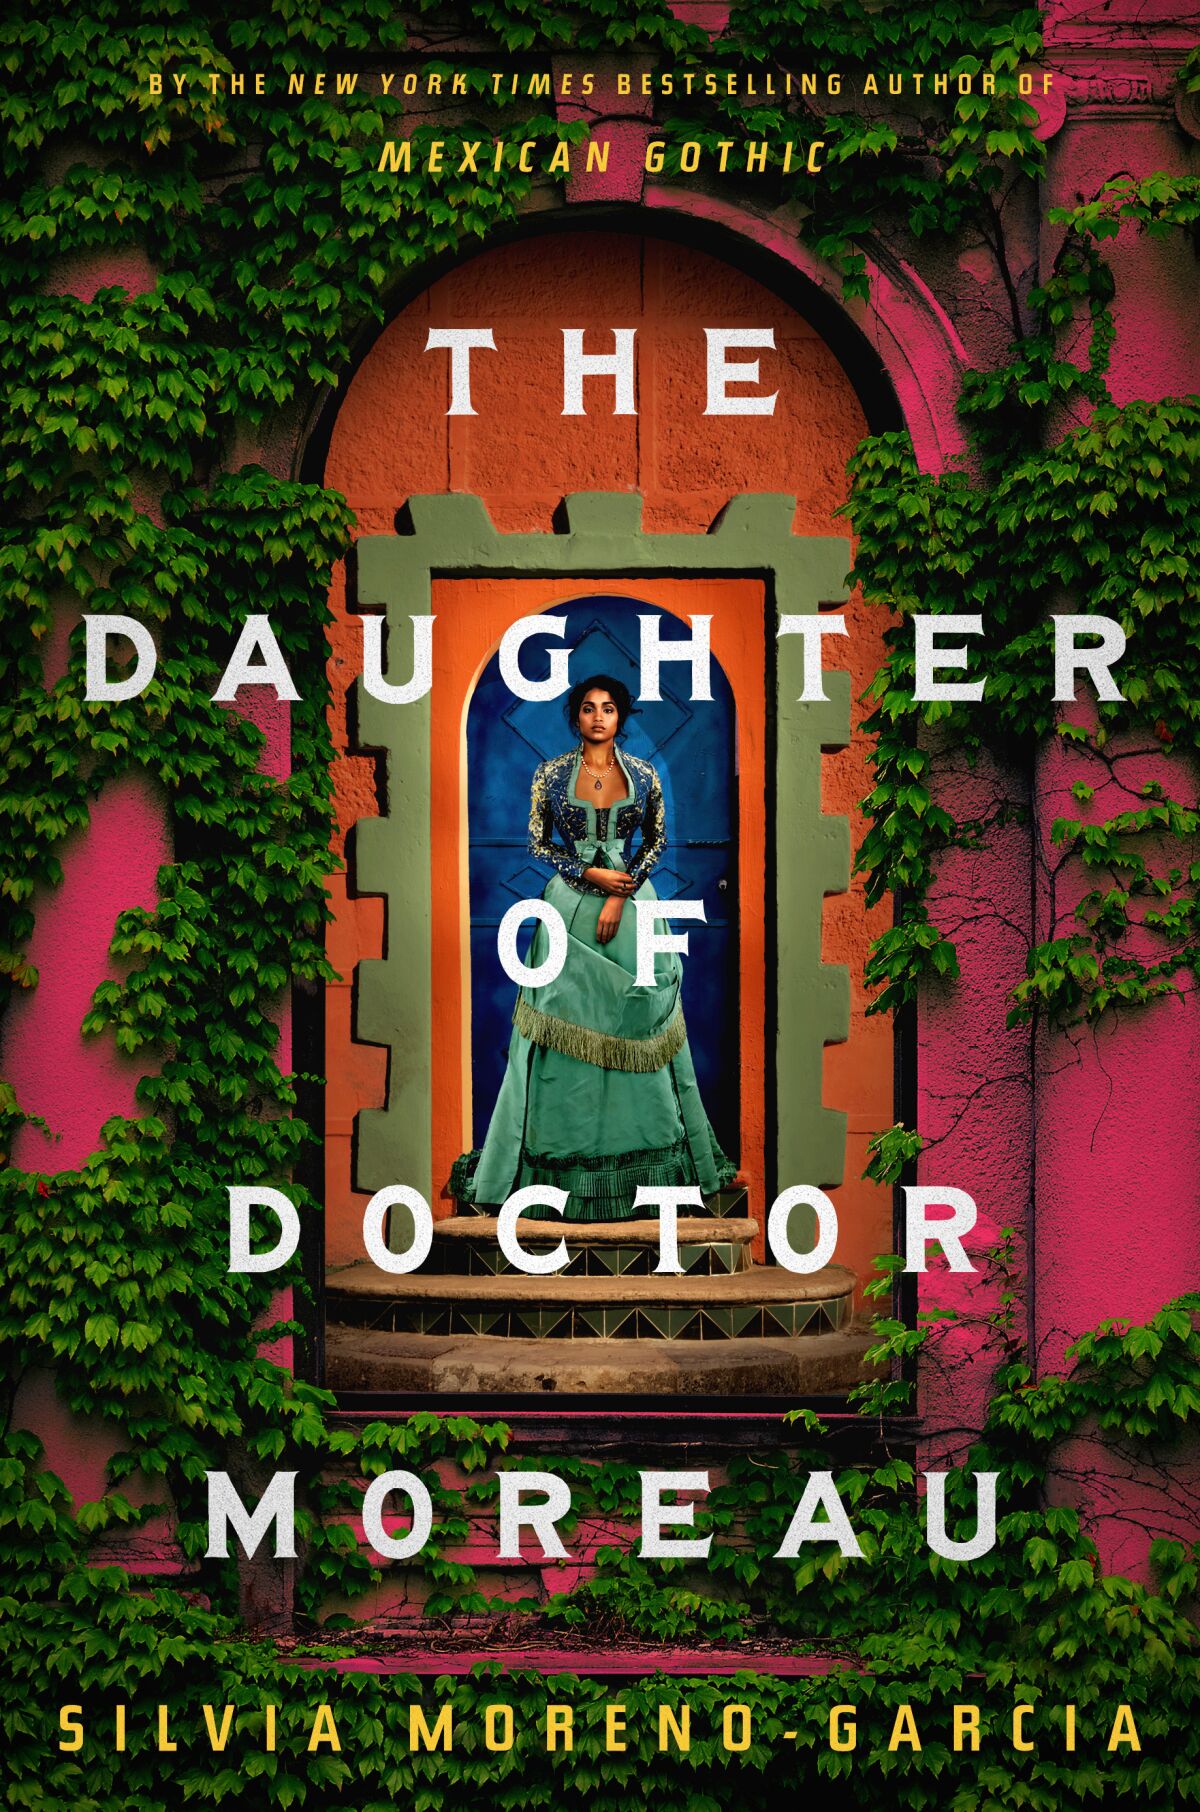 the book "Doctor Moreau's daughter" by Silvia Moreno Garcia